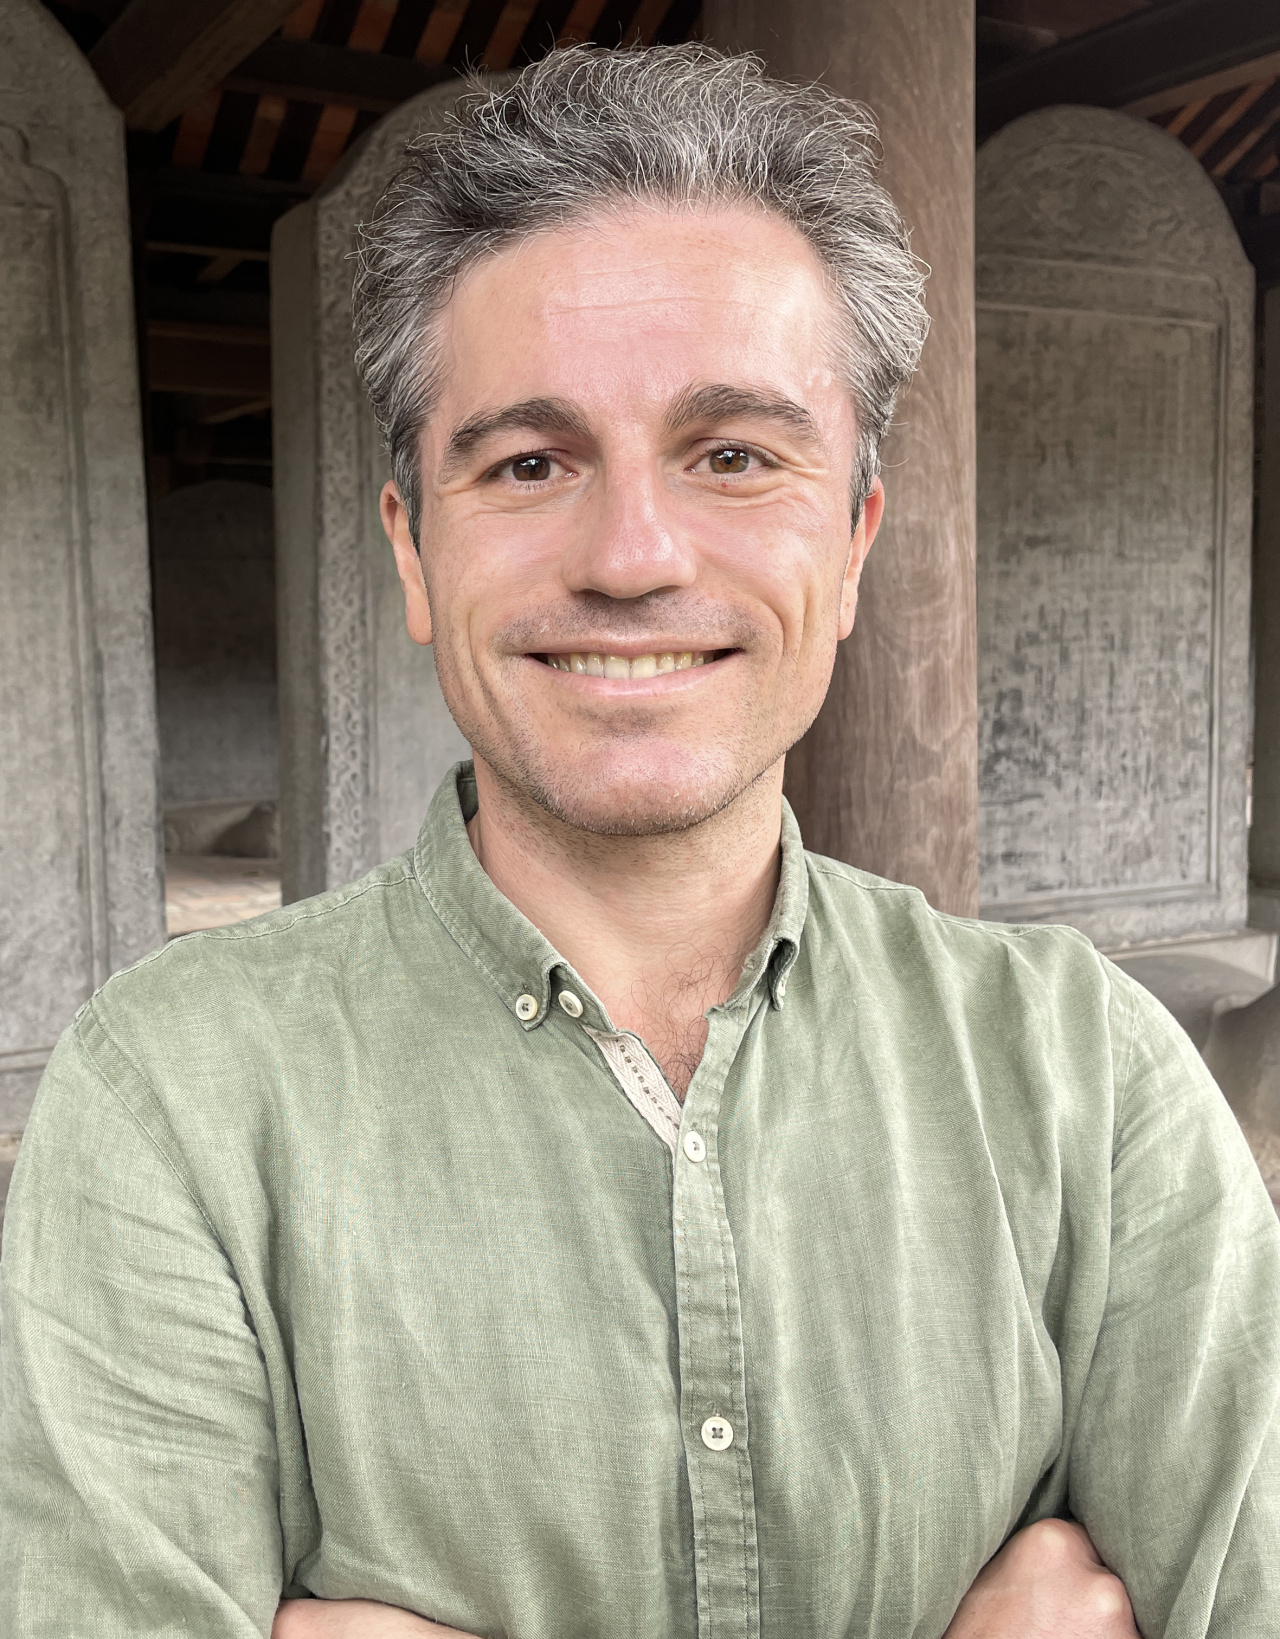 A man in a green linen shirt with short gray hair